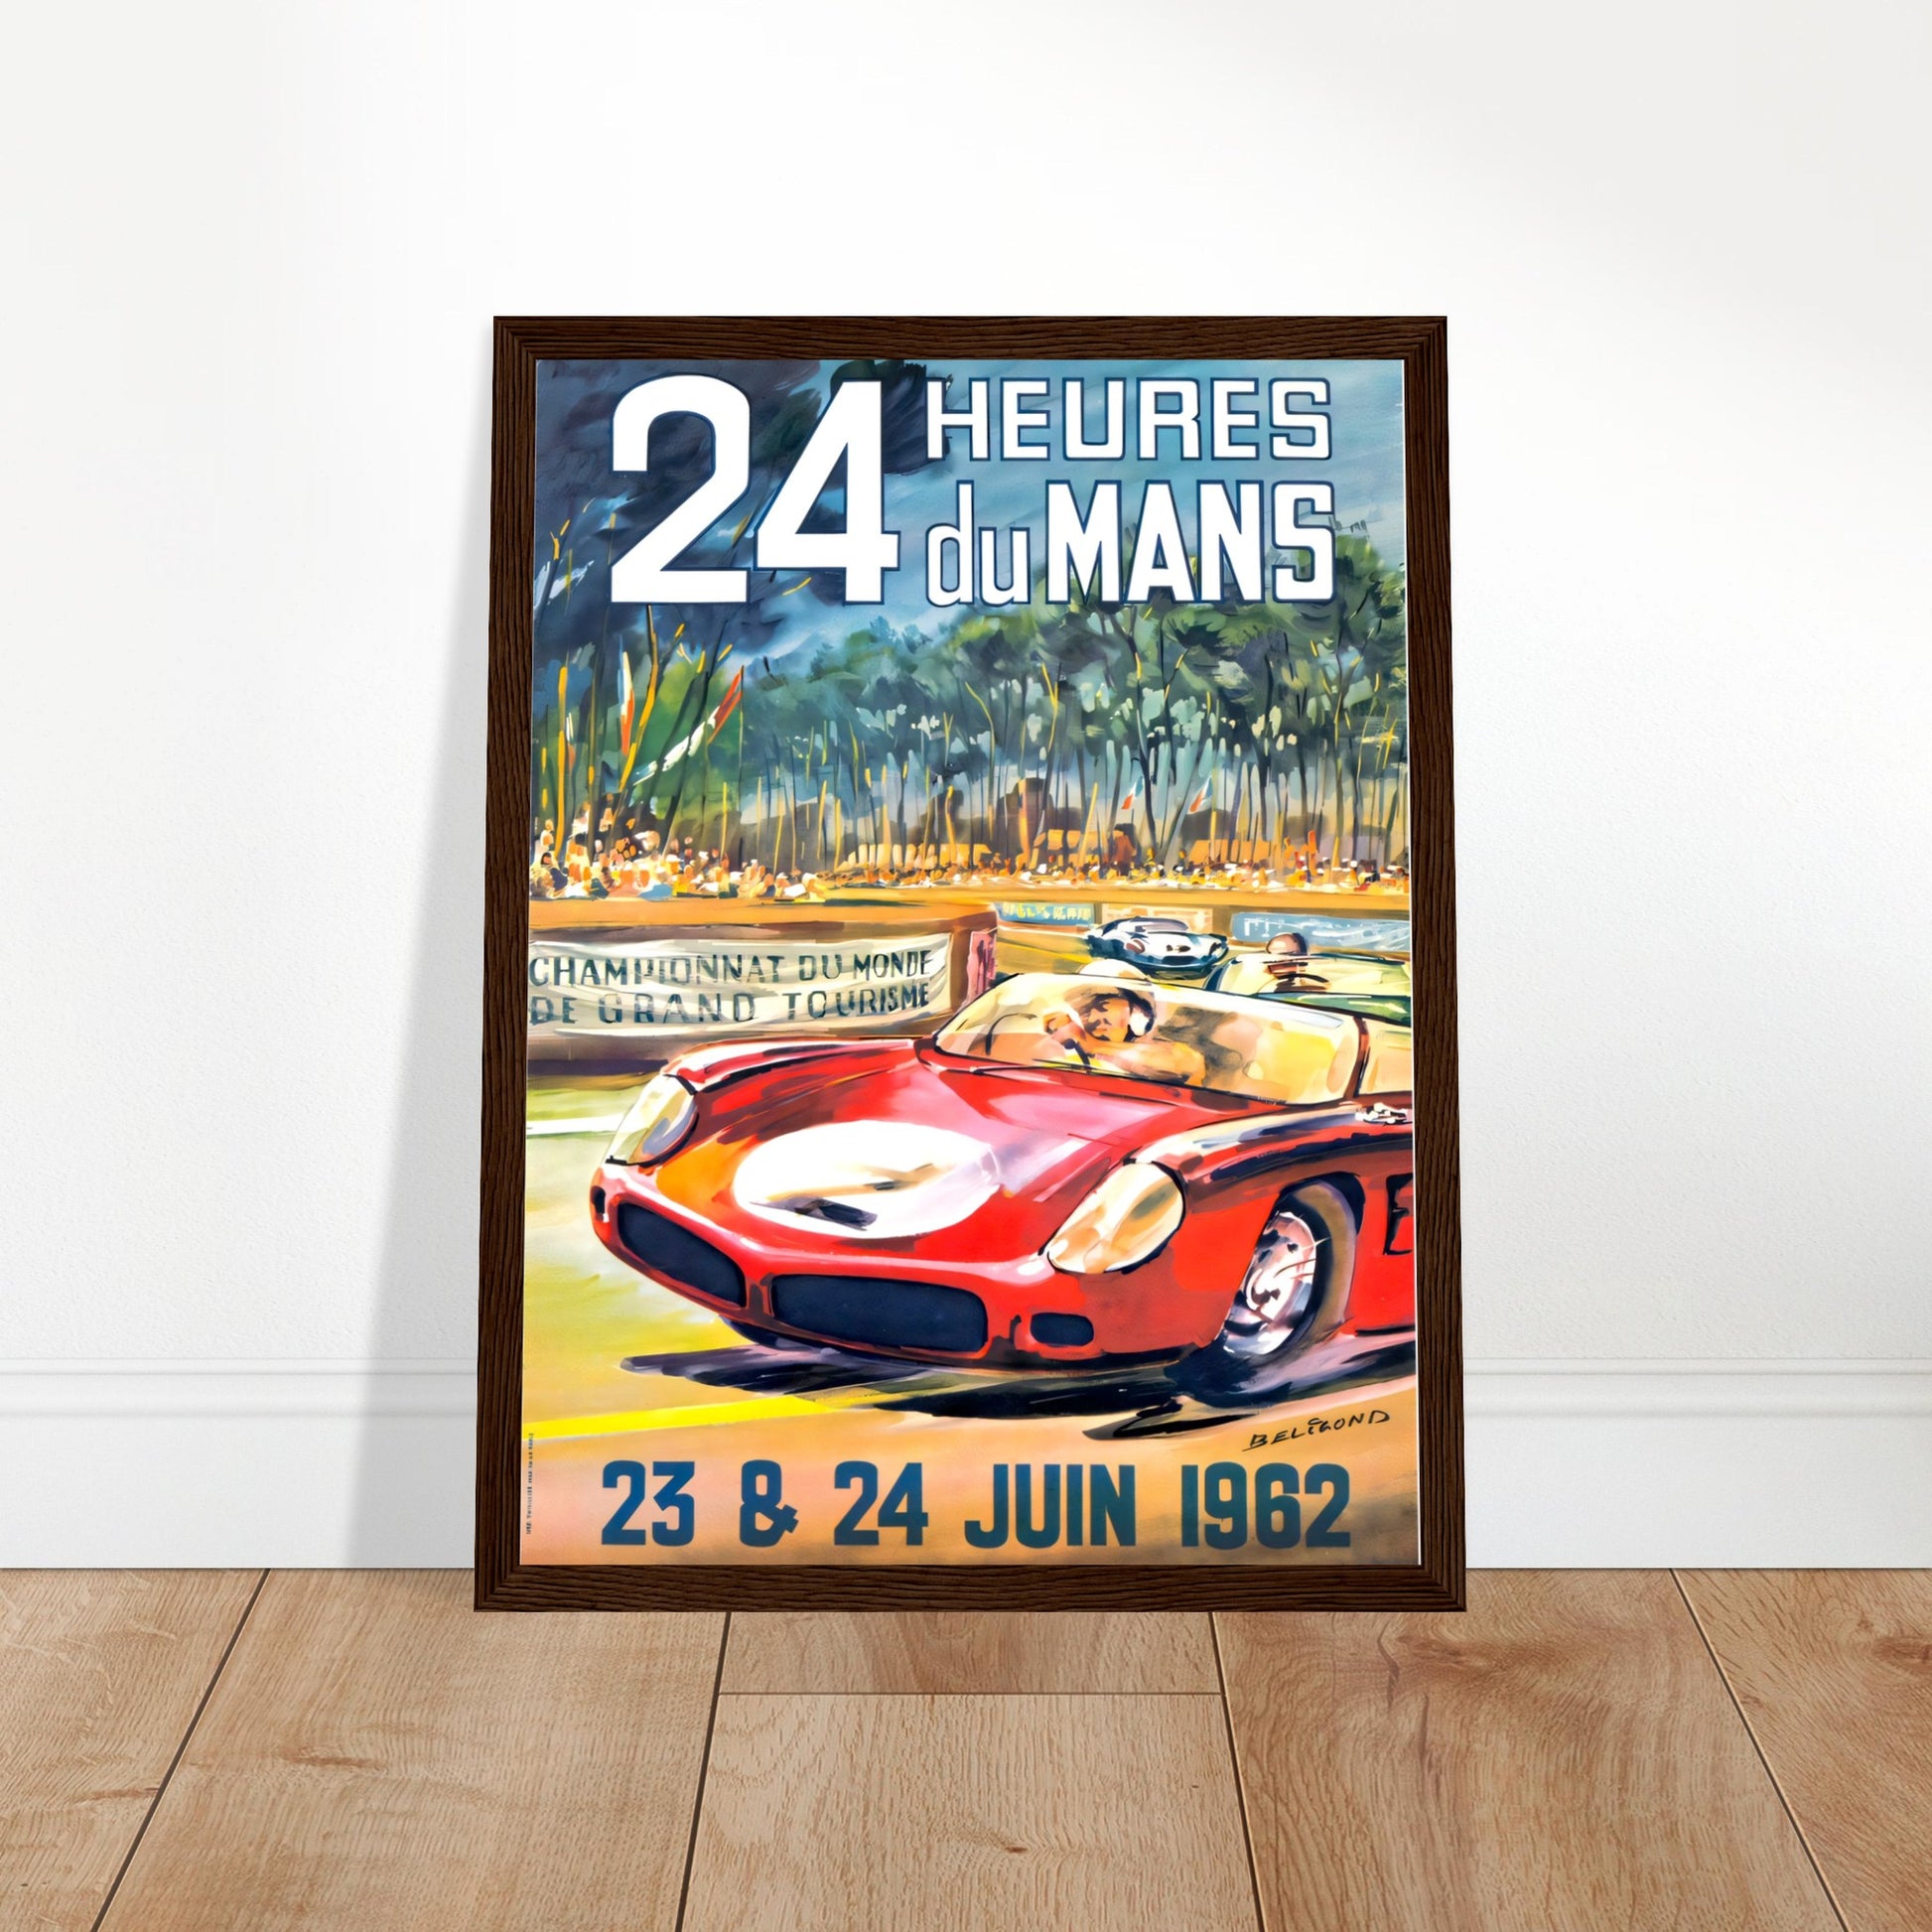 Le Mans Vintage Poster Reprint on Premium Matte Paper - Posterify